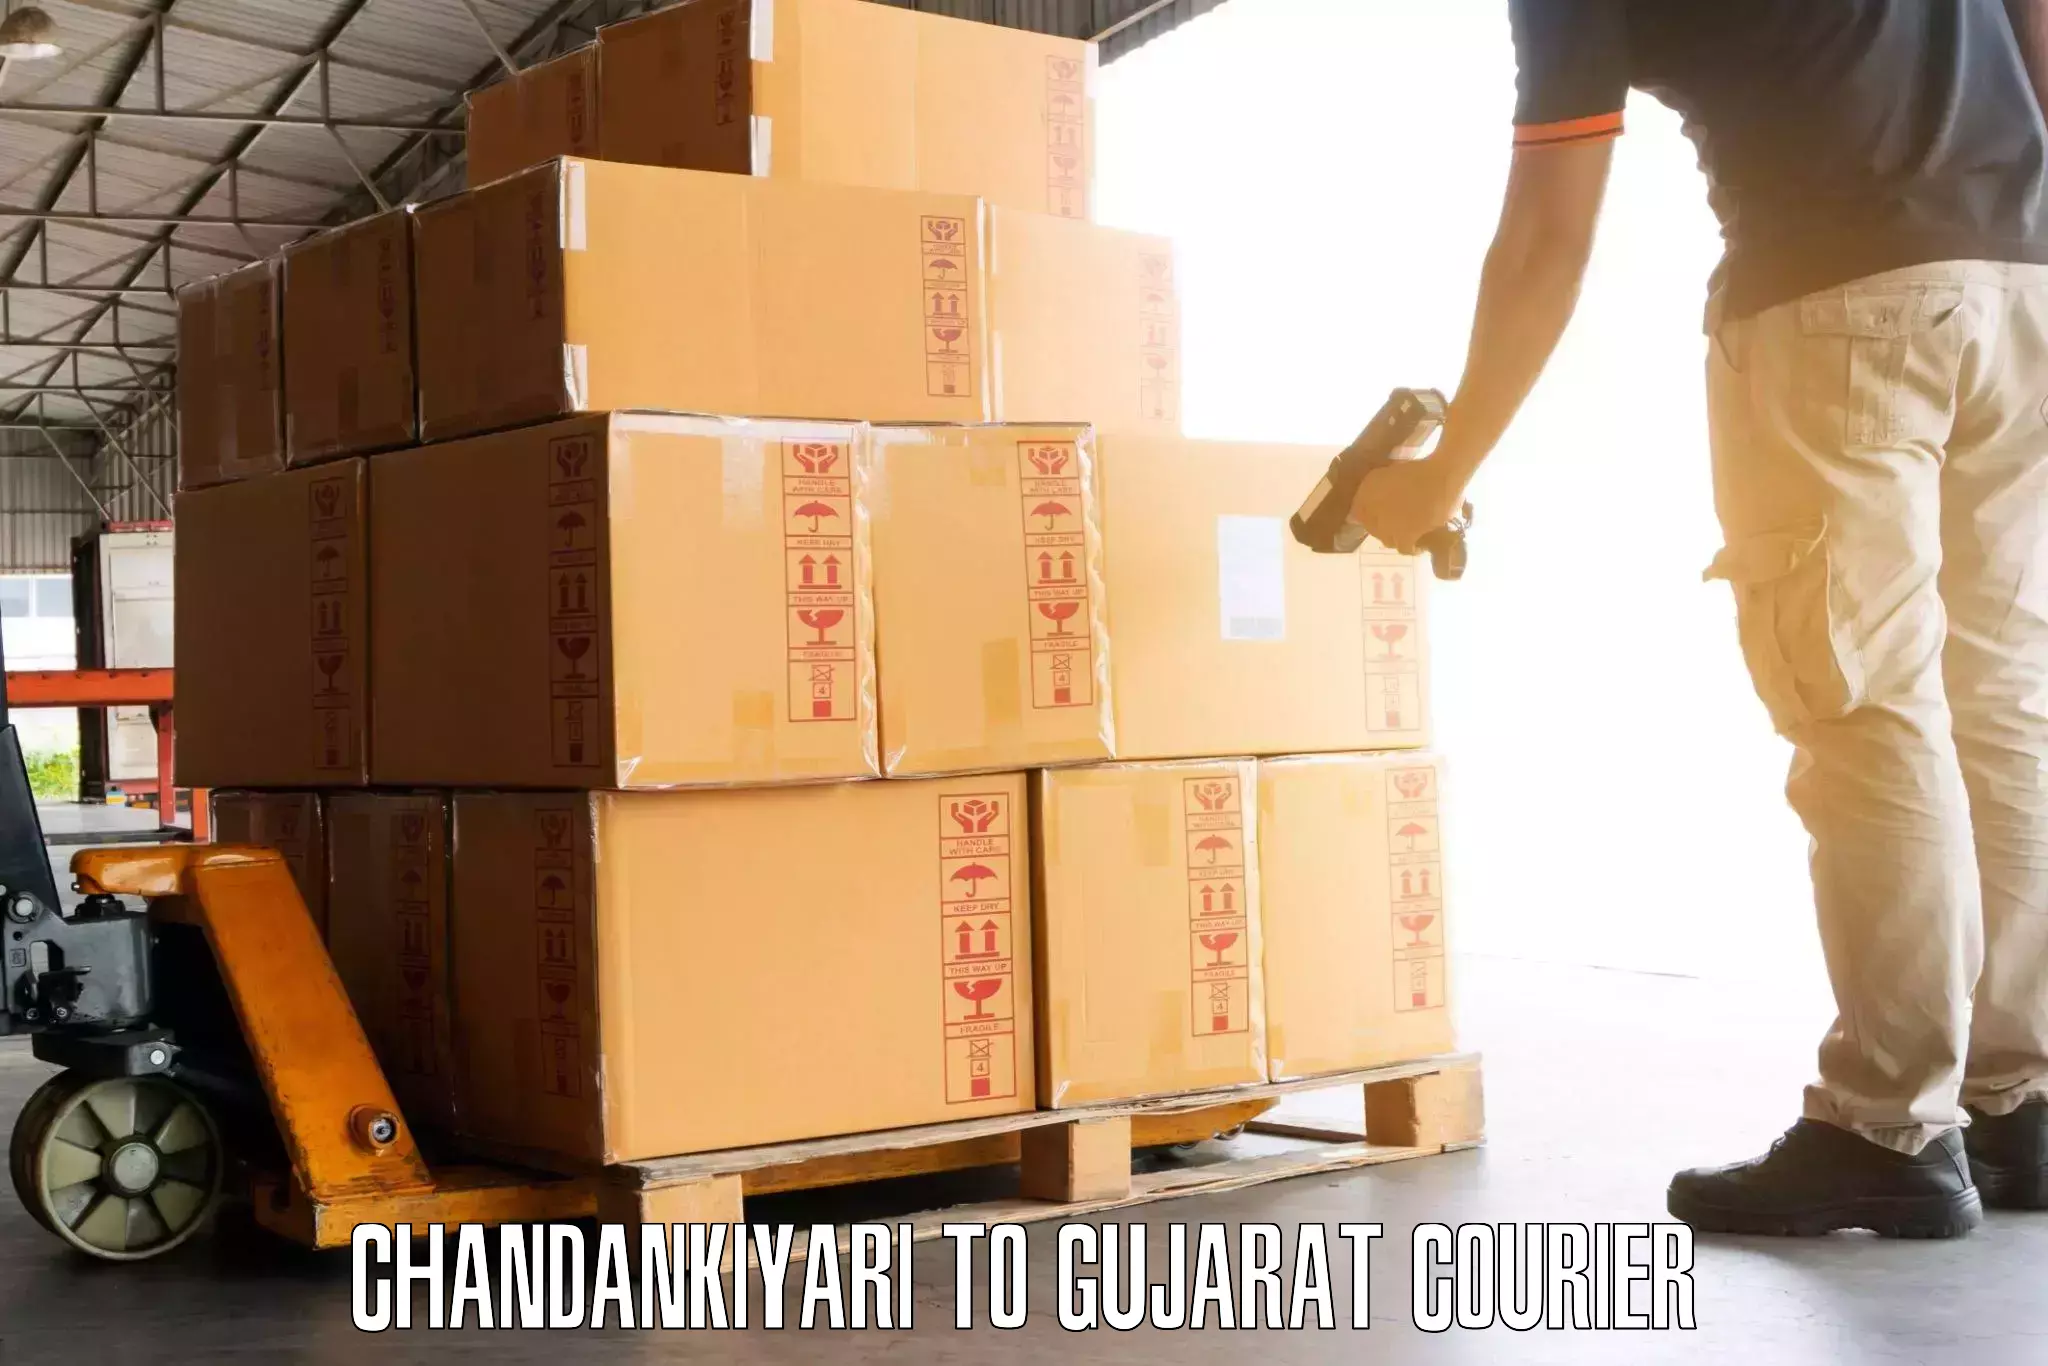 Luggage delivery logistics Chandankiyari to Becharaji